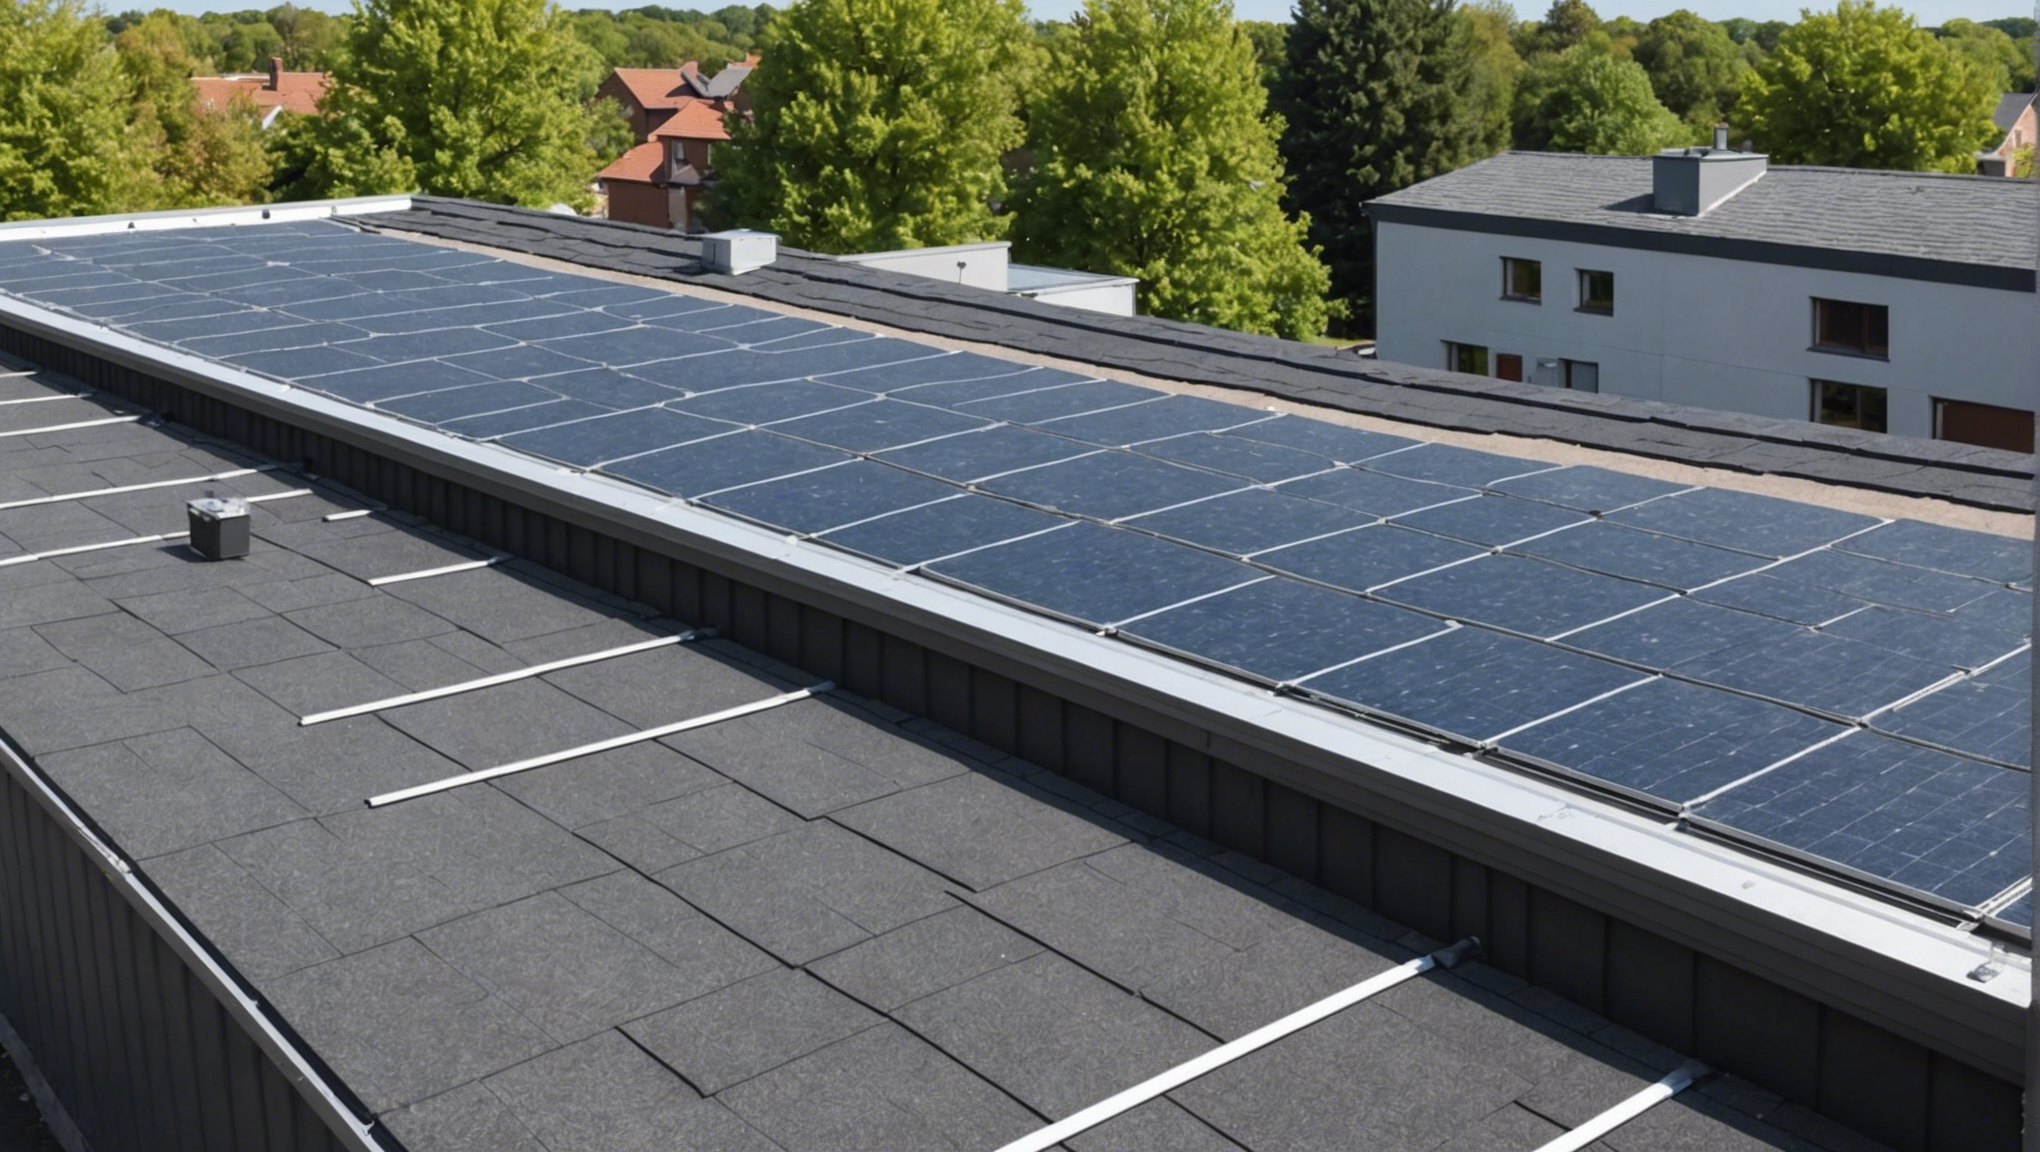 découvrez comment l'isolation thermofiber france optimise l'efficacité énergétique de votre toiture pour des économies d'énergie durables.